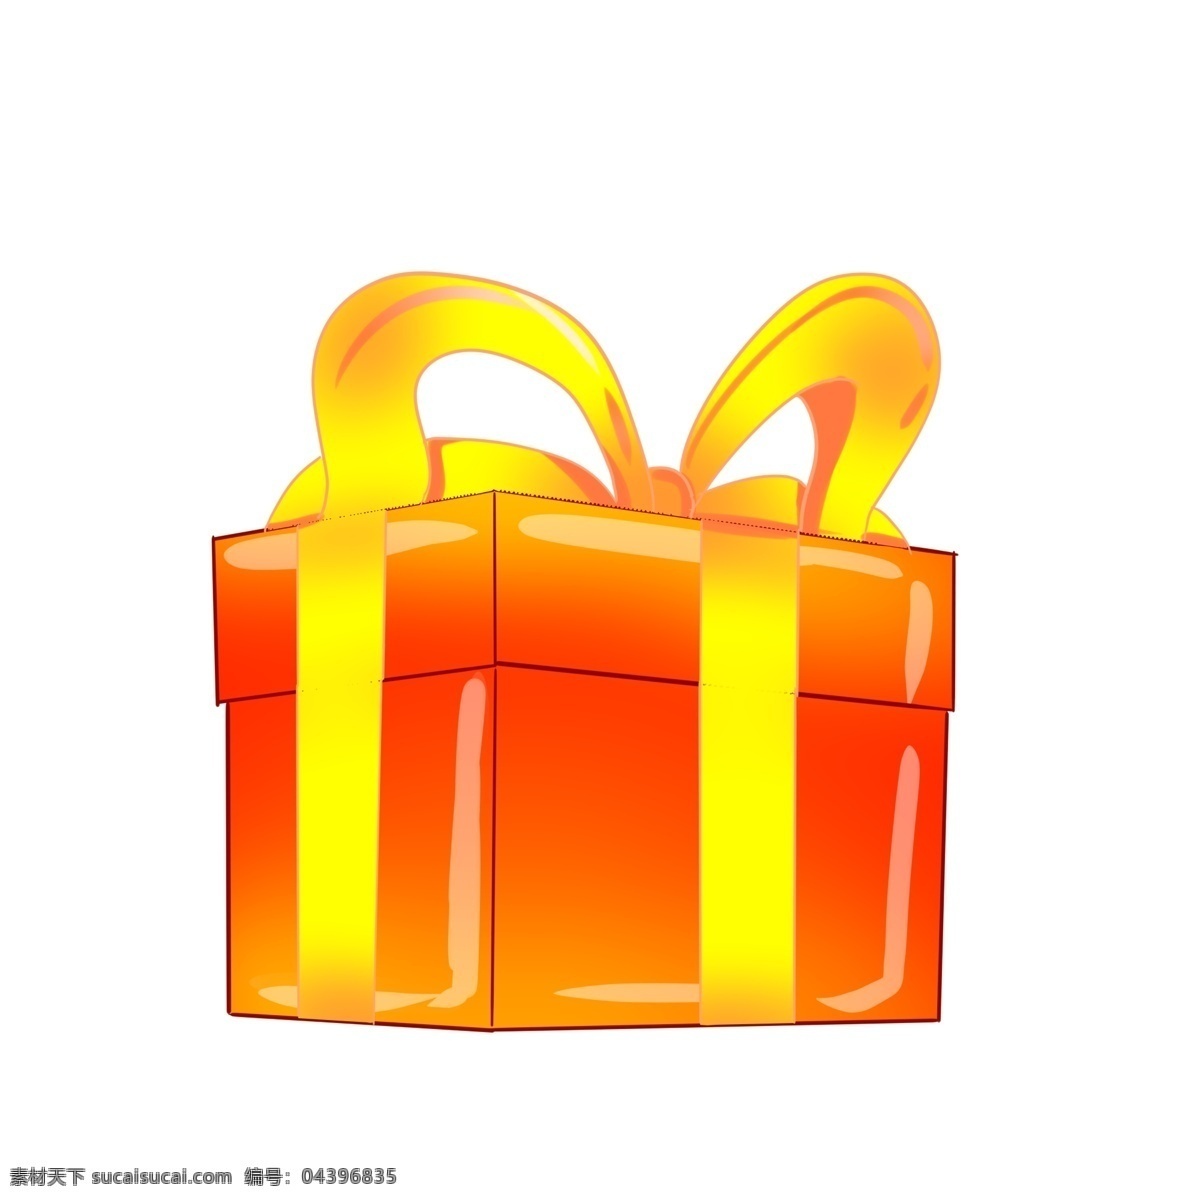 喜庆 红色 方形 礼盒 礼品礼盒 系了彩带 精美的结 暖色 送人礼物 包装 装饰 方形礼盒 礼盒大蝴蝶结 喜洋洋